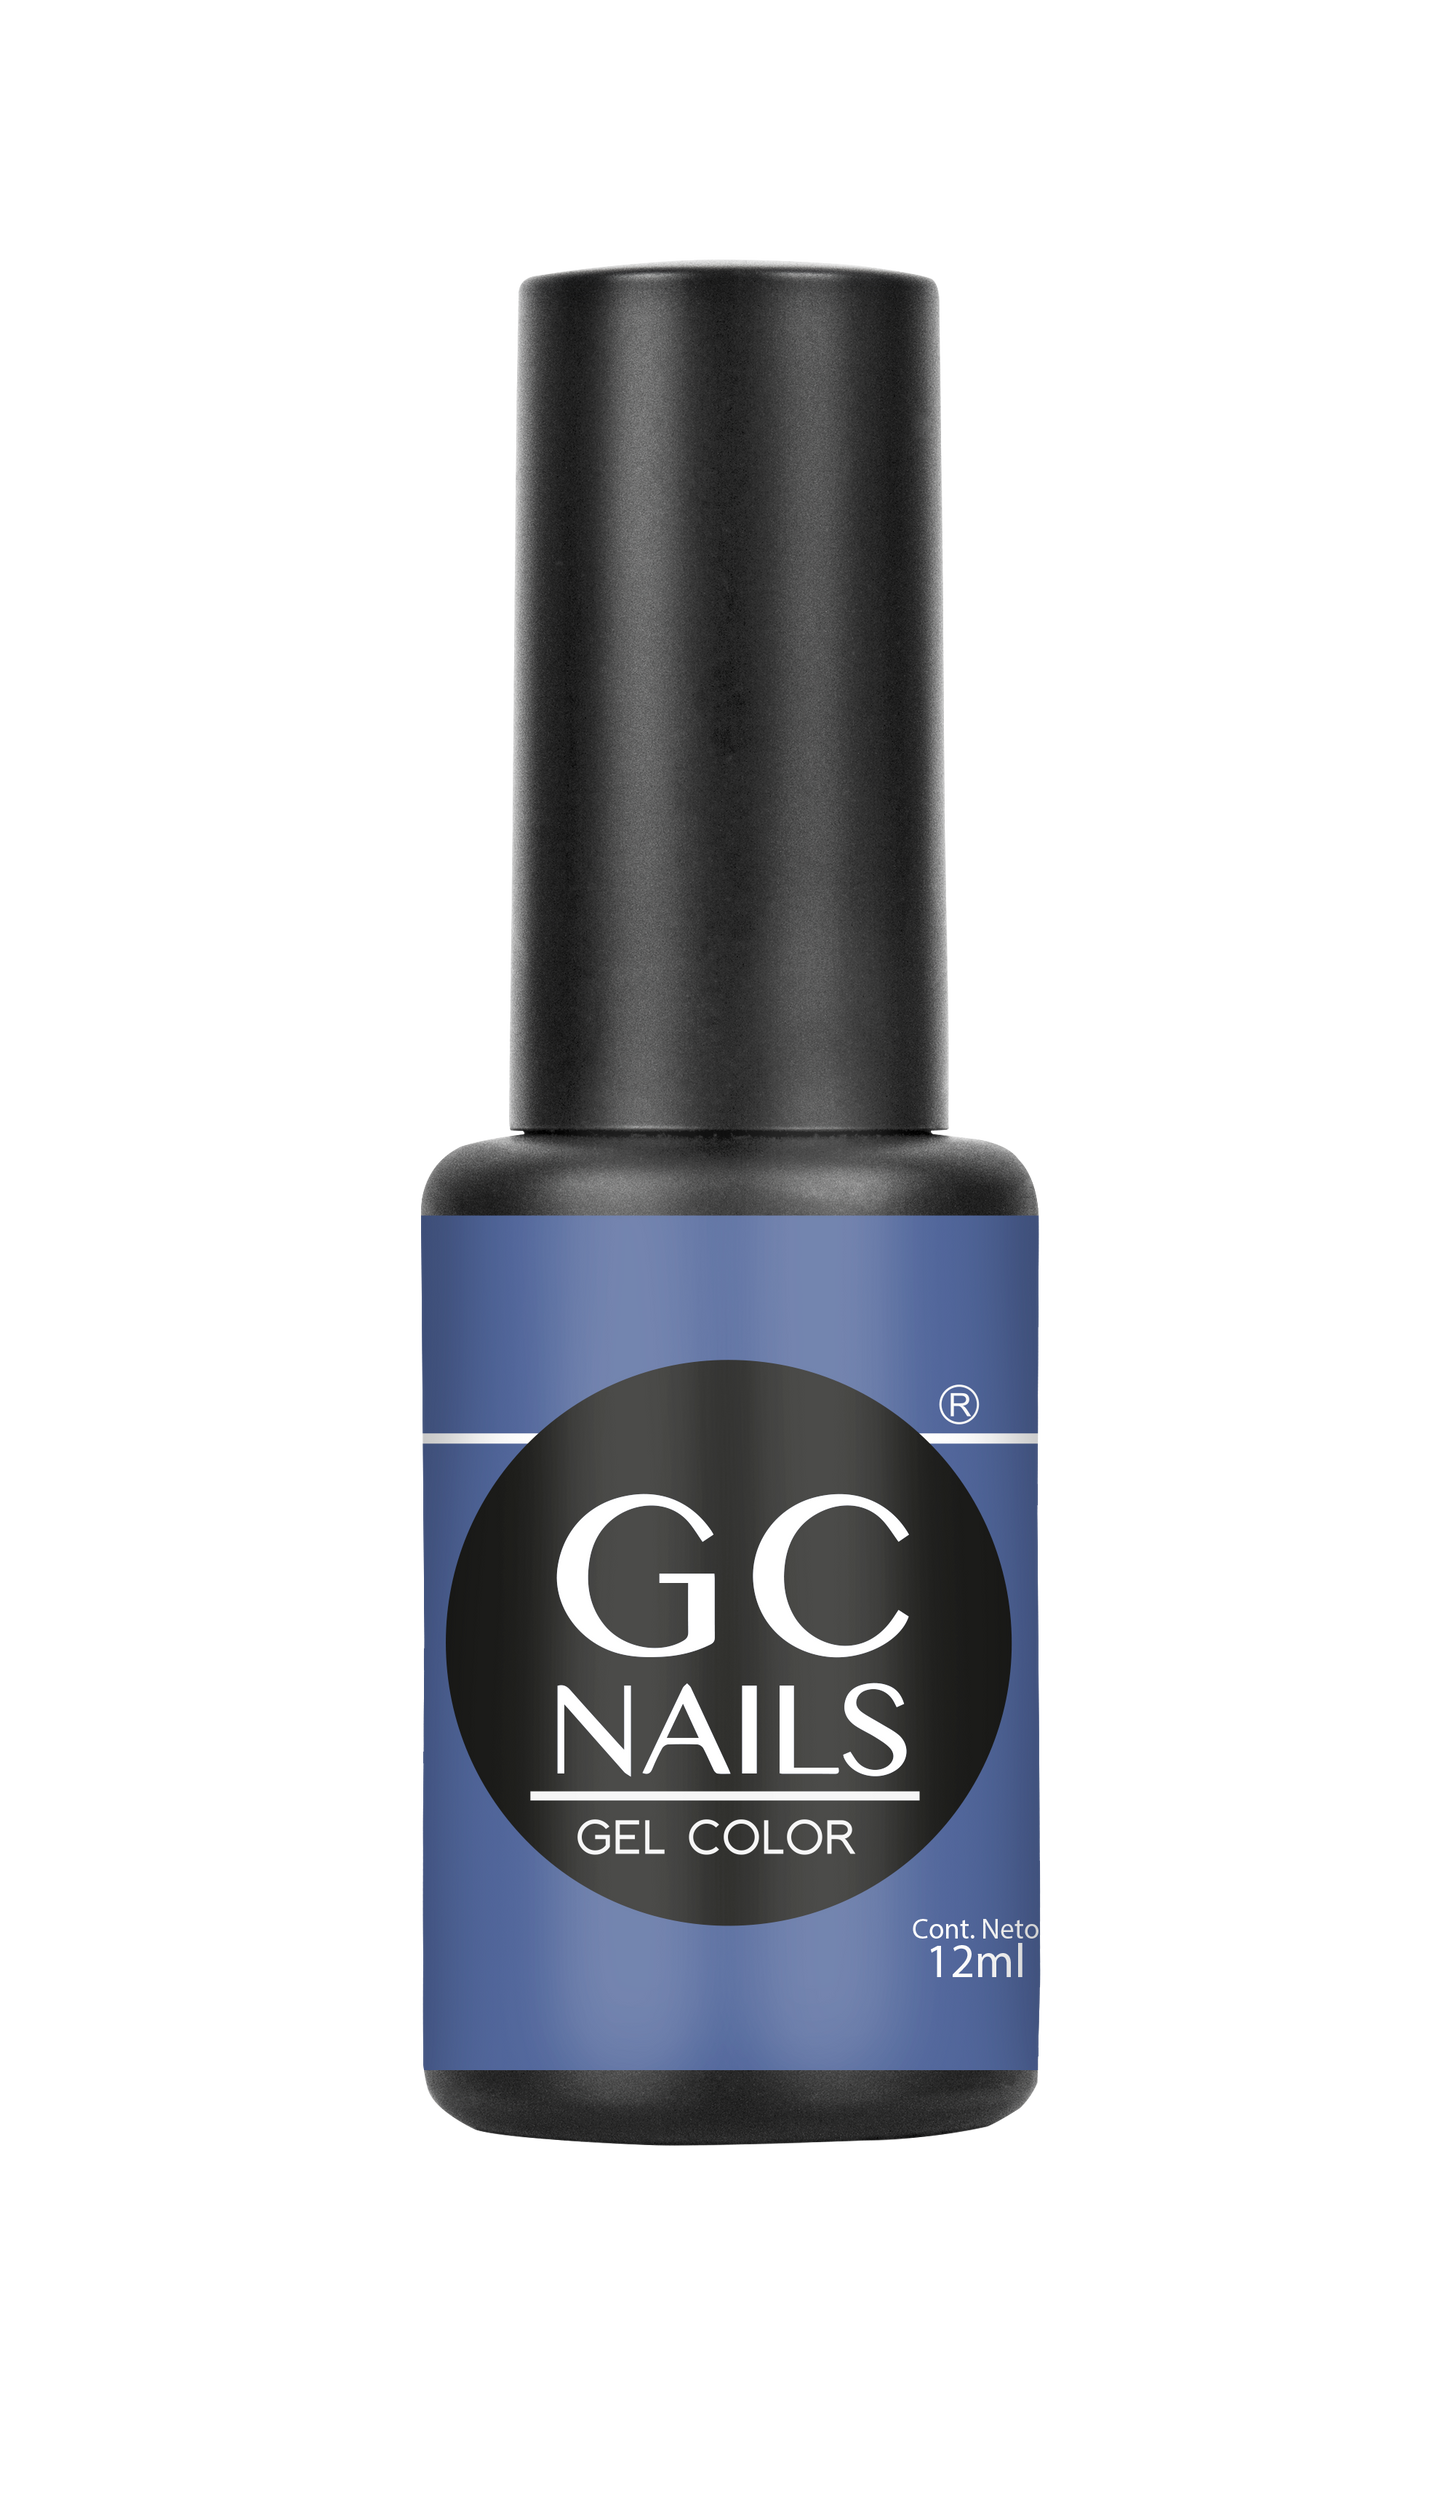 GC nails bel-color 12ml ARRECIFE 94